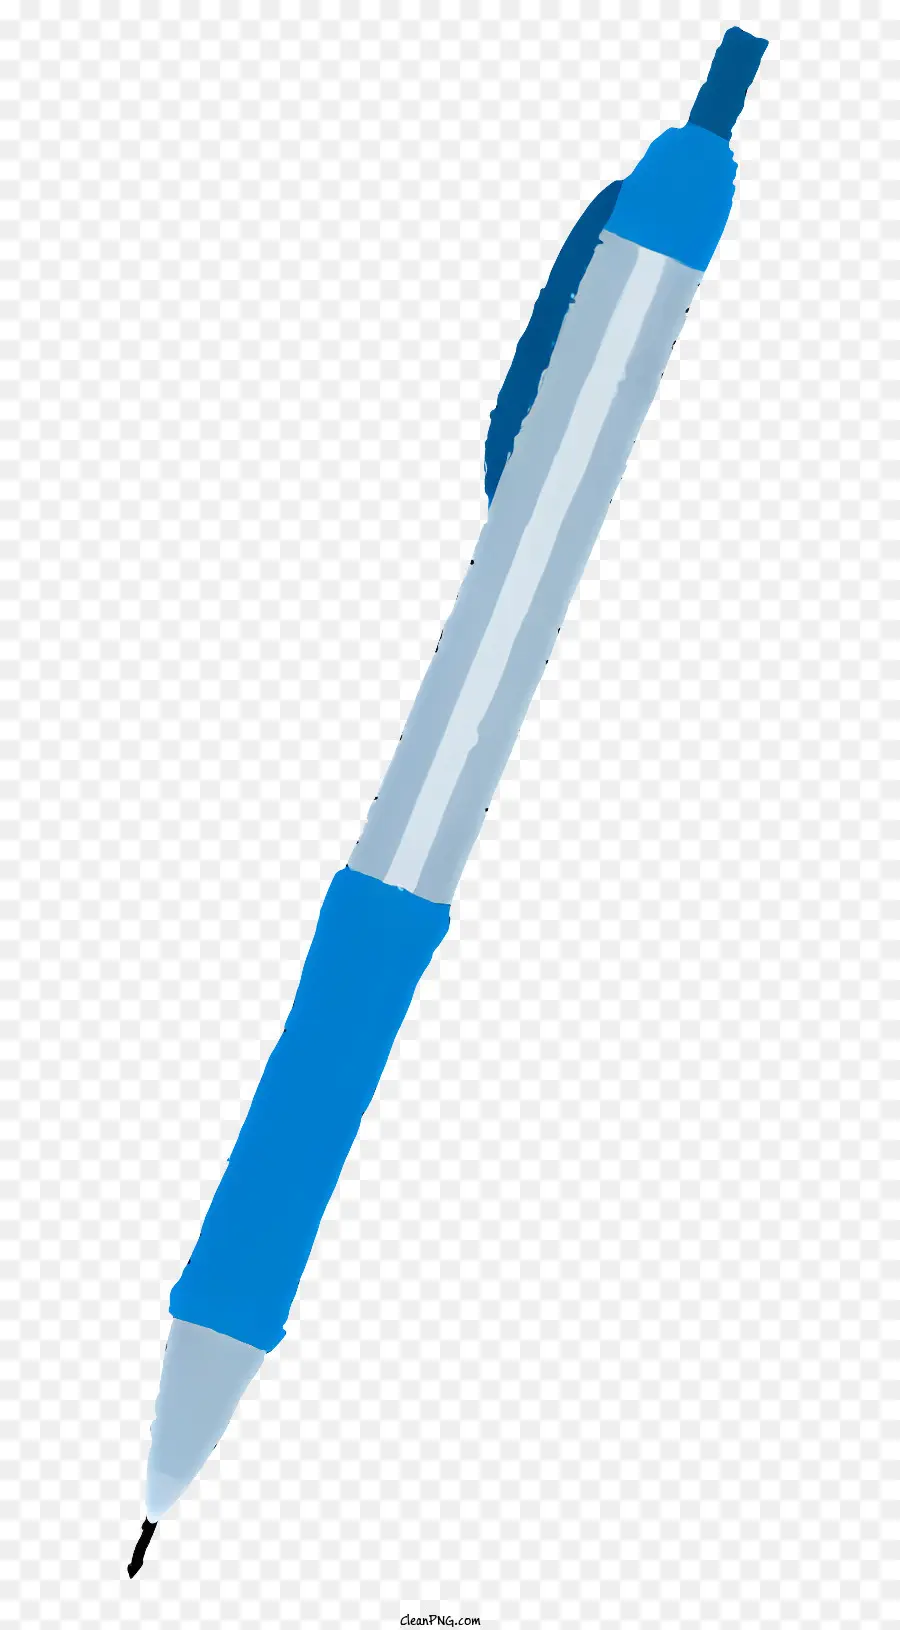 sfondo bianco - Immagine a bassa risoluzione della penna blu lucida con punta chiara